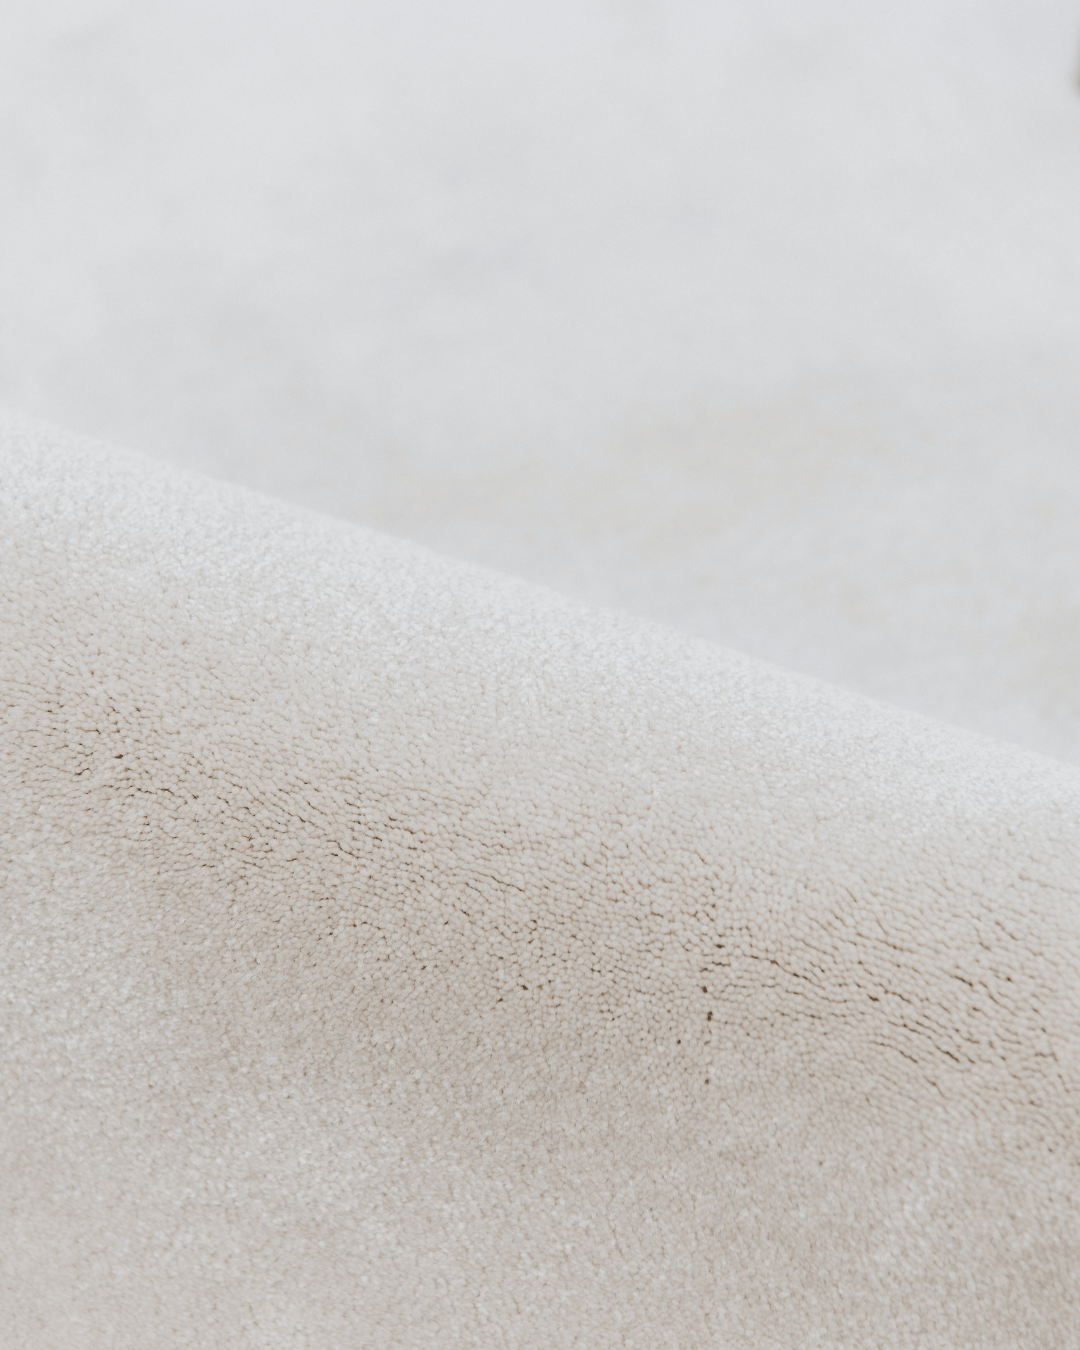 Detail zacht materiaal duurzaam tapijt met opverend garen in een beige tint, beach kleur.